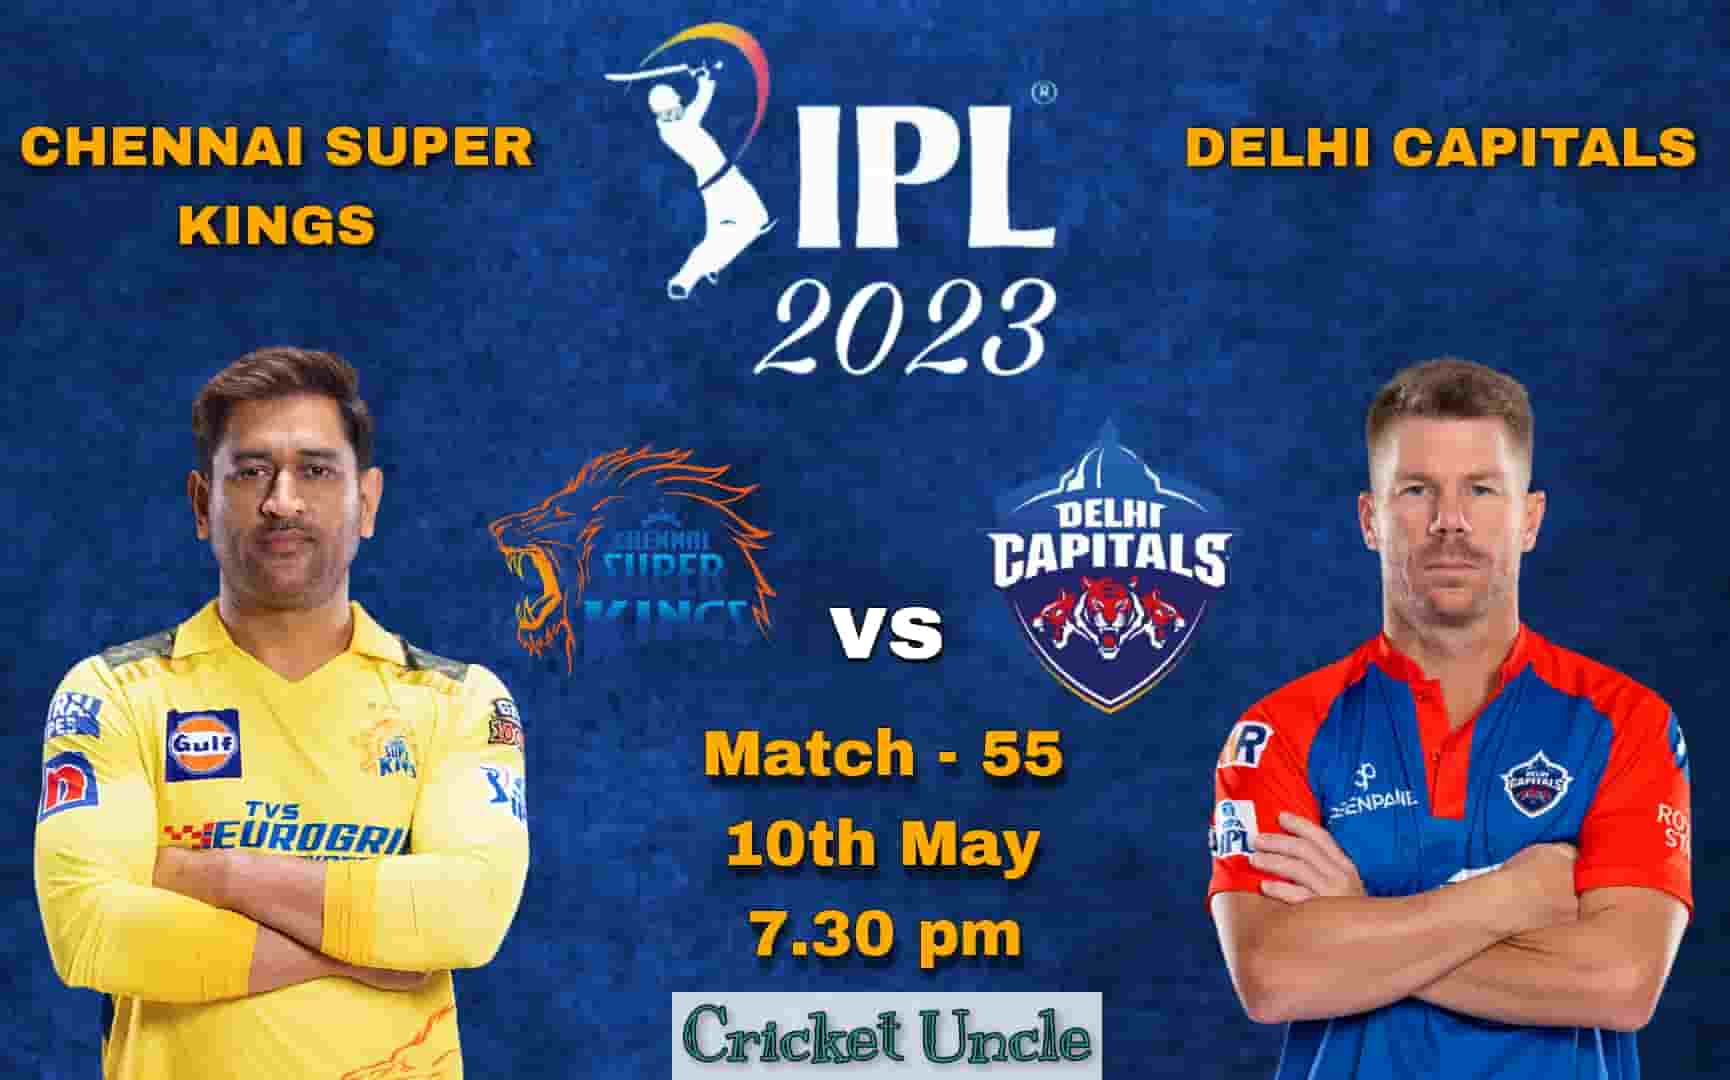 Poster of IPL 2023 match 55 prediction between Chennai Super Kings vs Delhi Capitals